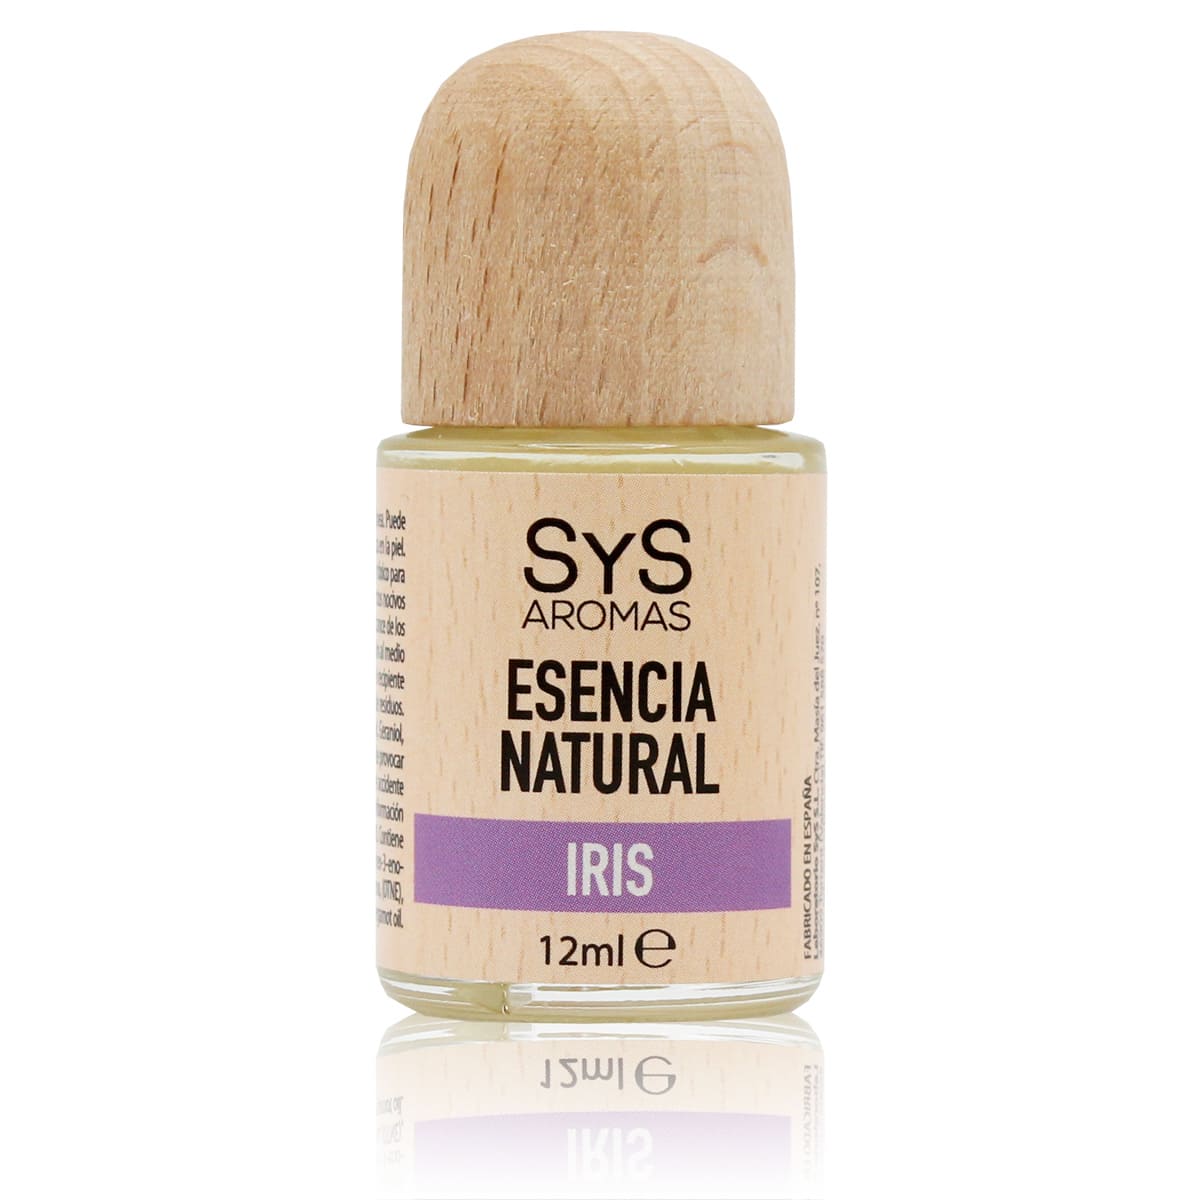 Buy Iris Essence 12ml SYS Aromas